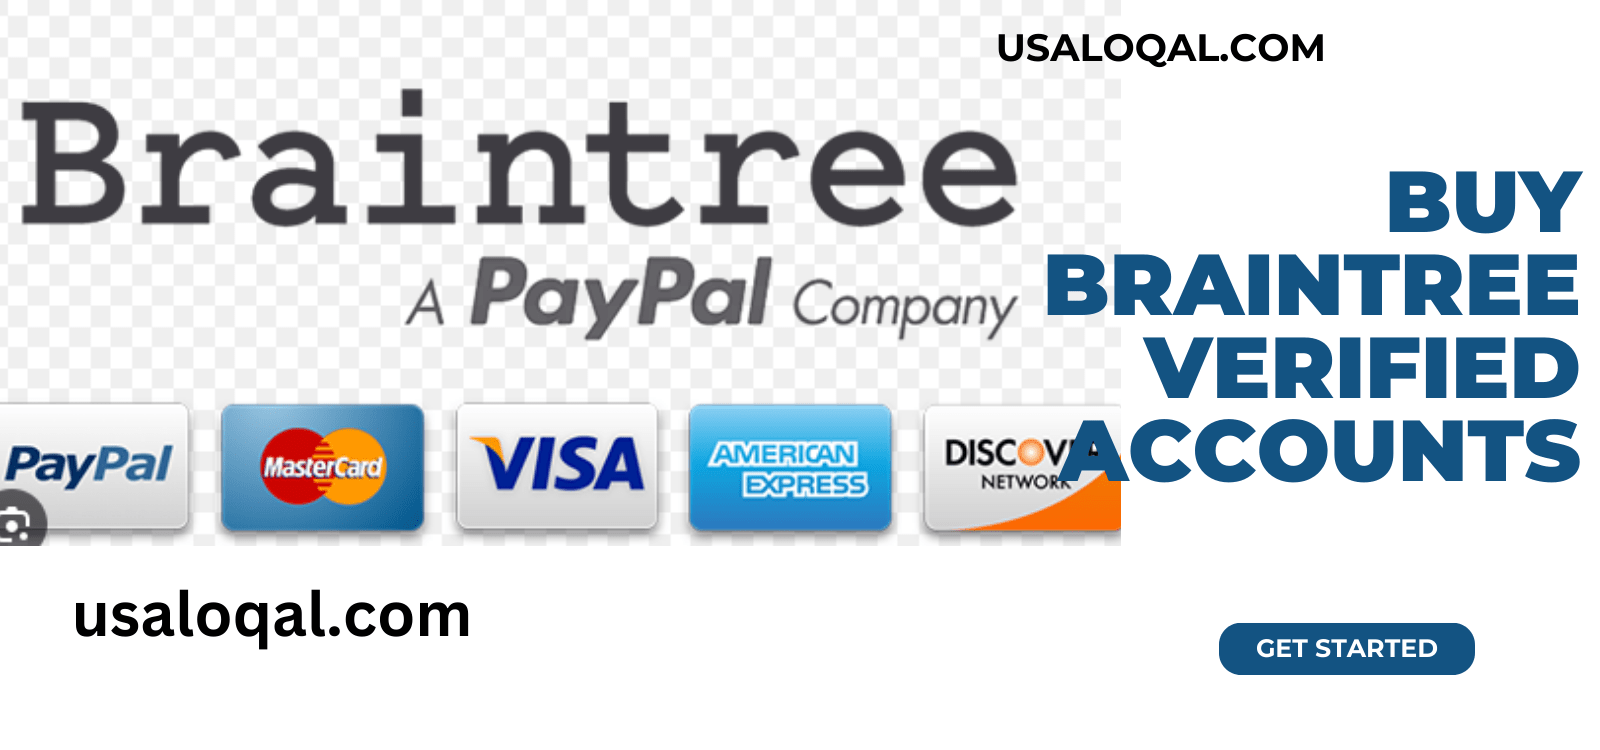 Buy Braintree Verified Accounts - Usaloqal